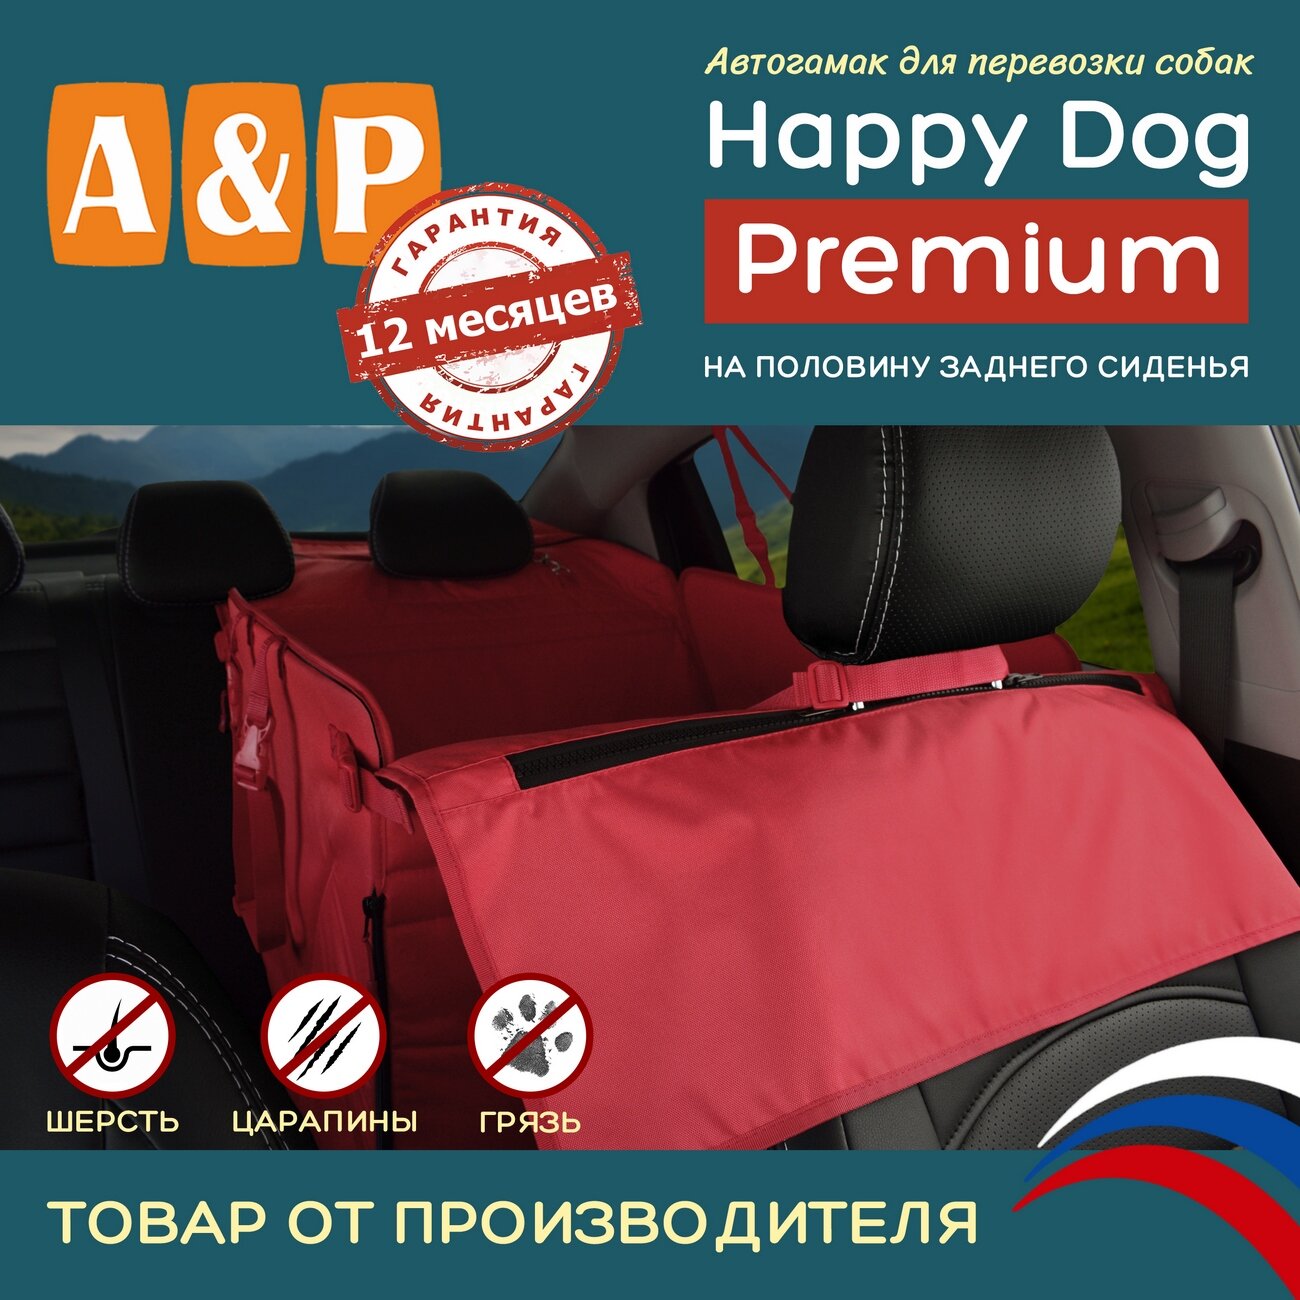 Автогамак Happy Dog Premium (Хэппи Дог Премиум). На половину сиденья. Цвет: красный.